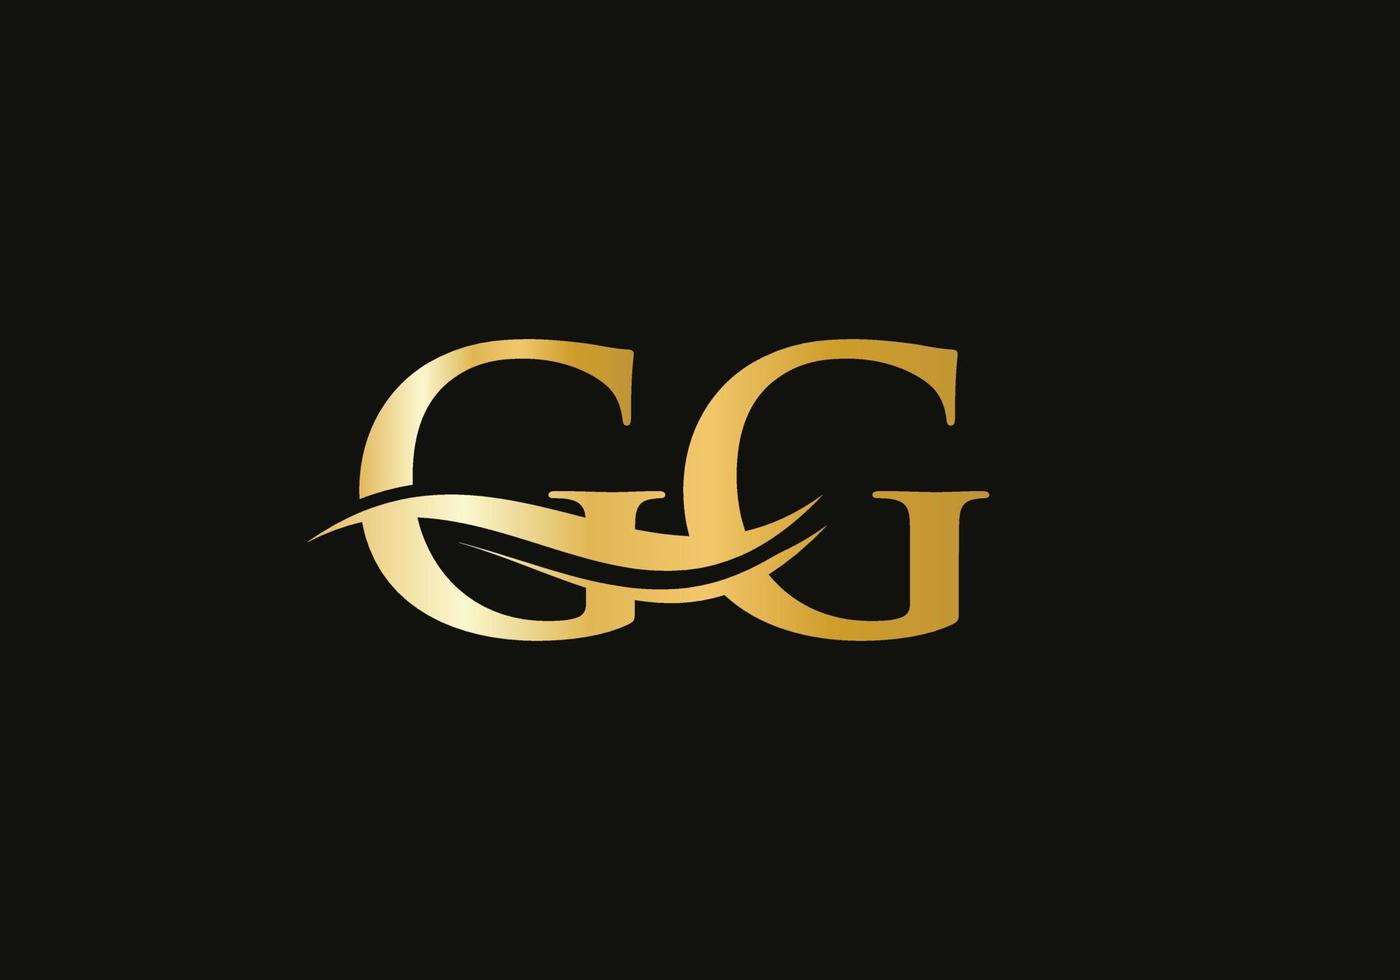 Initial linked letter GG logo design. Modern letter GG logo design vector with modern trendy